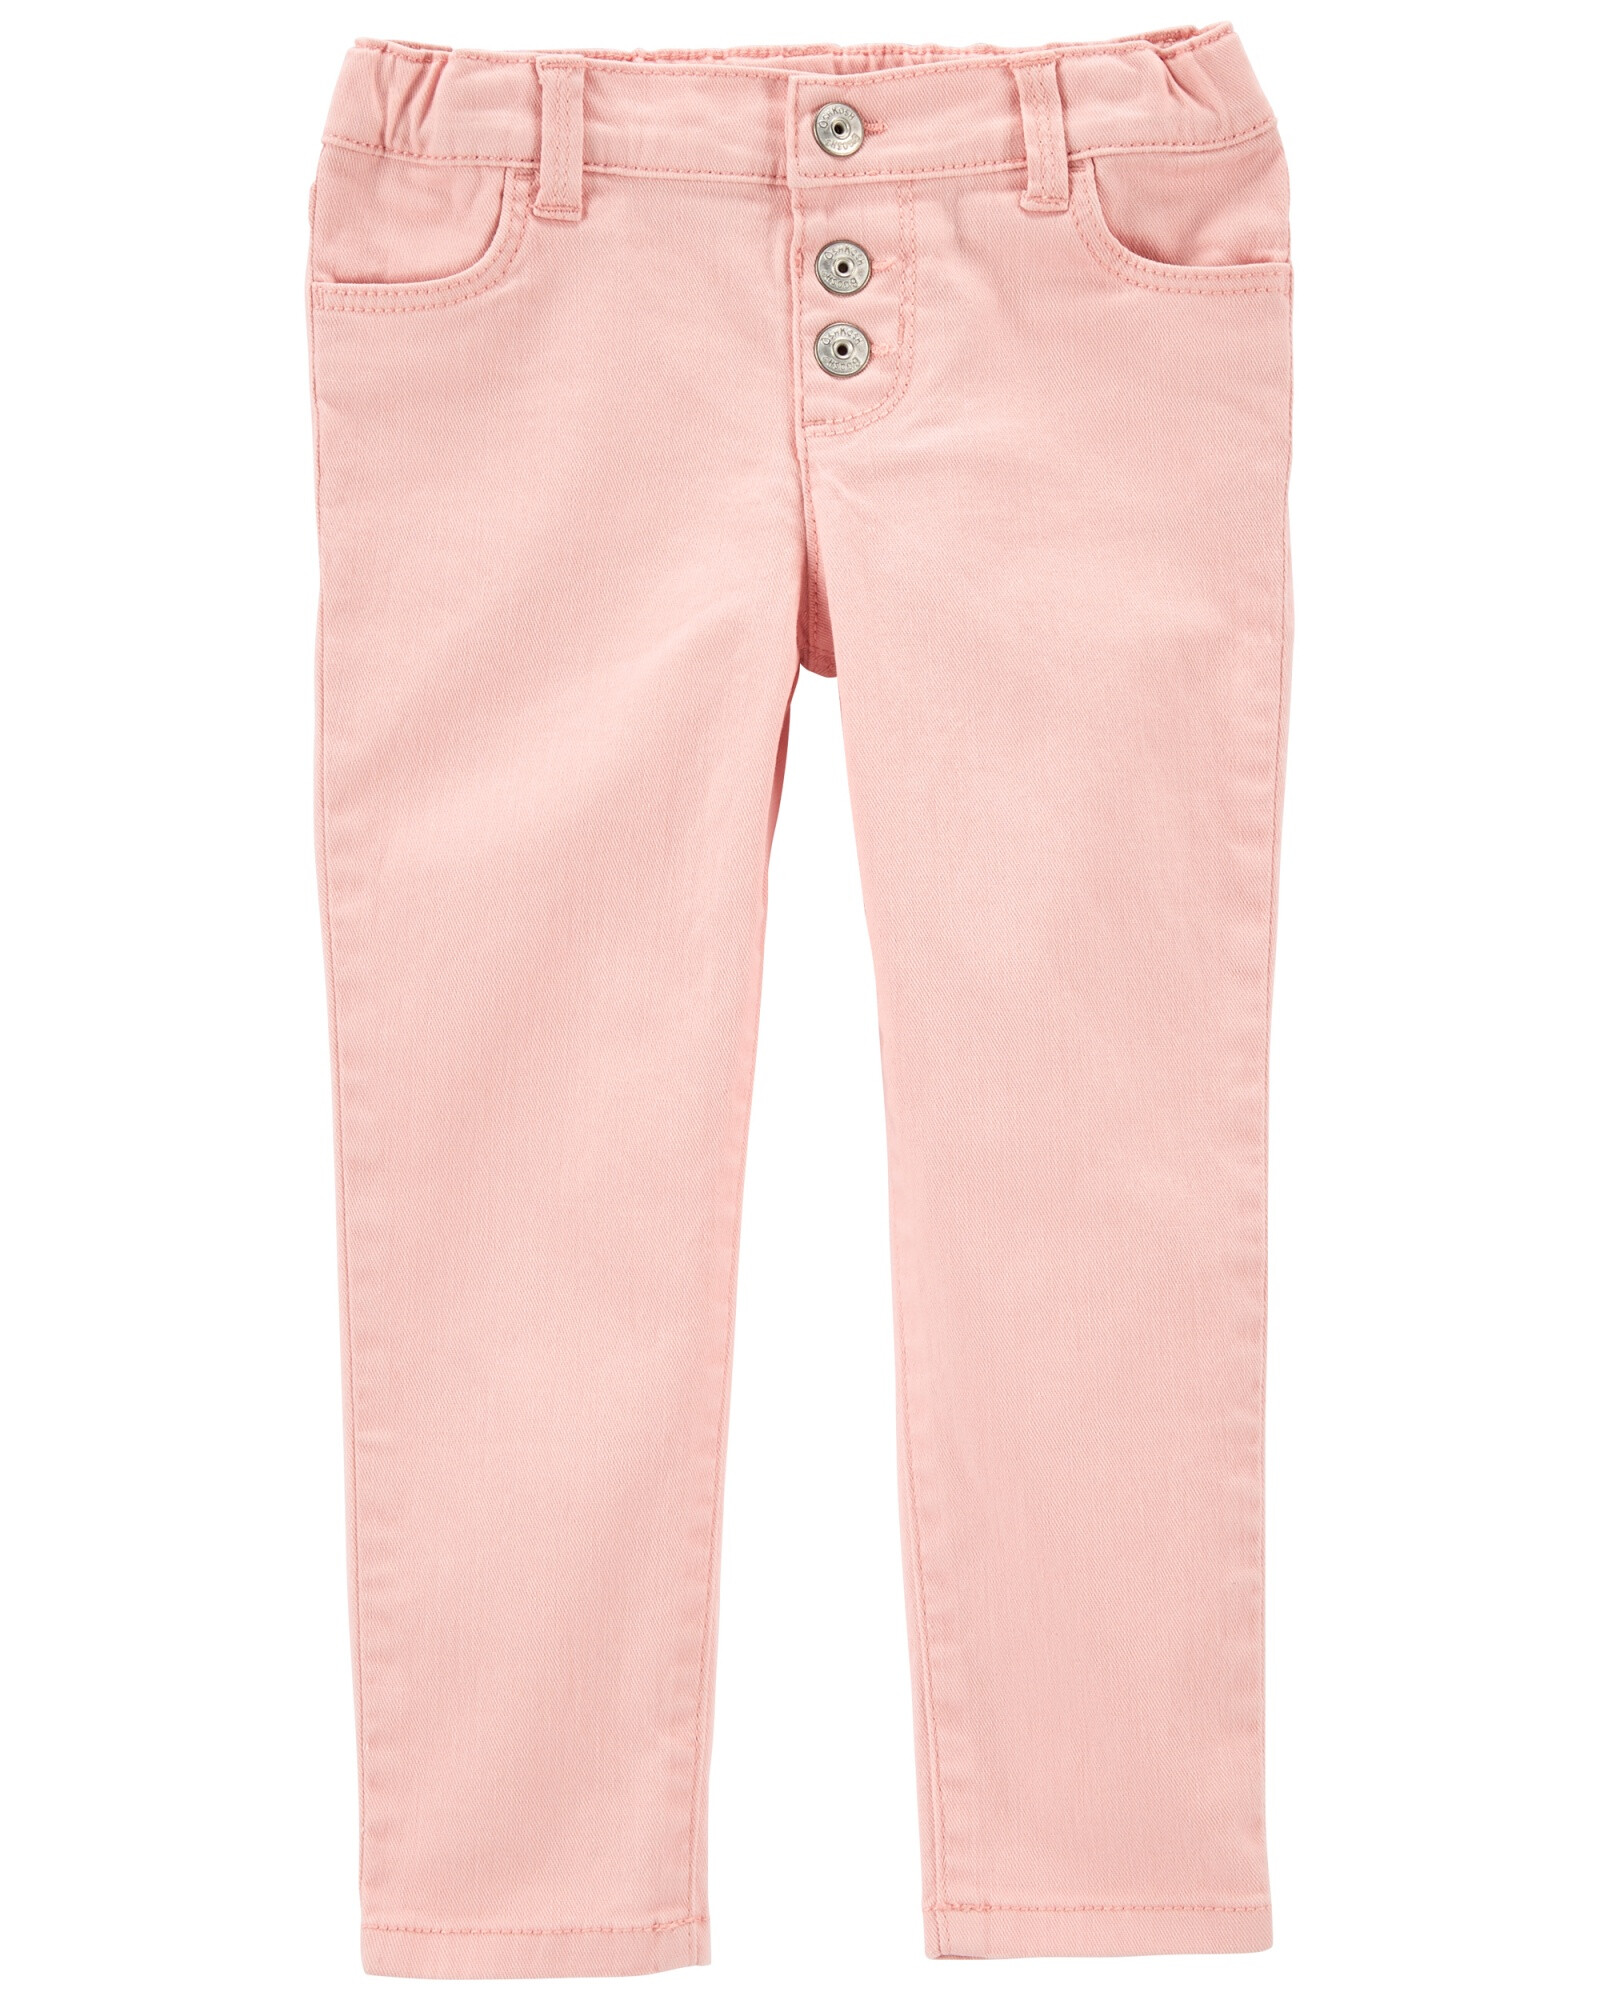 Pantalón de jean ajustado con botones. Talles 2-5T Sin color